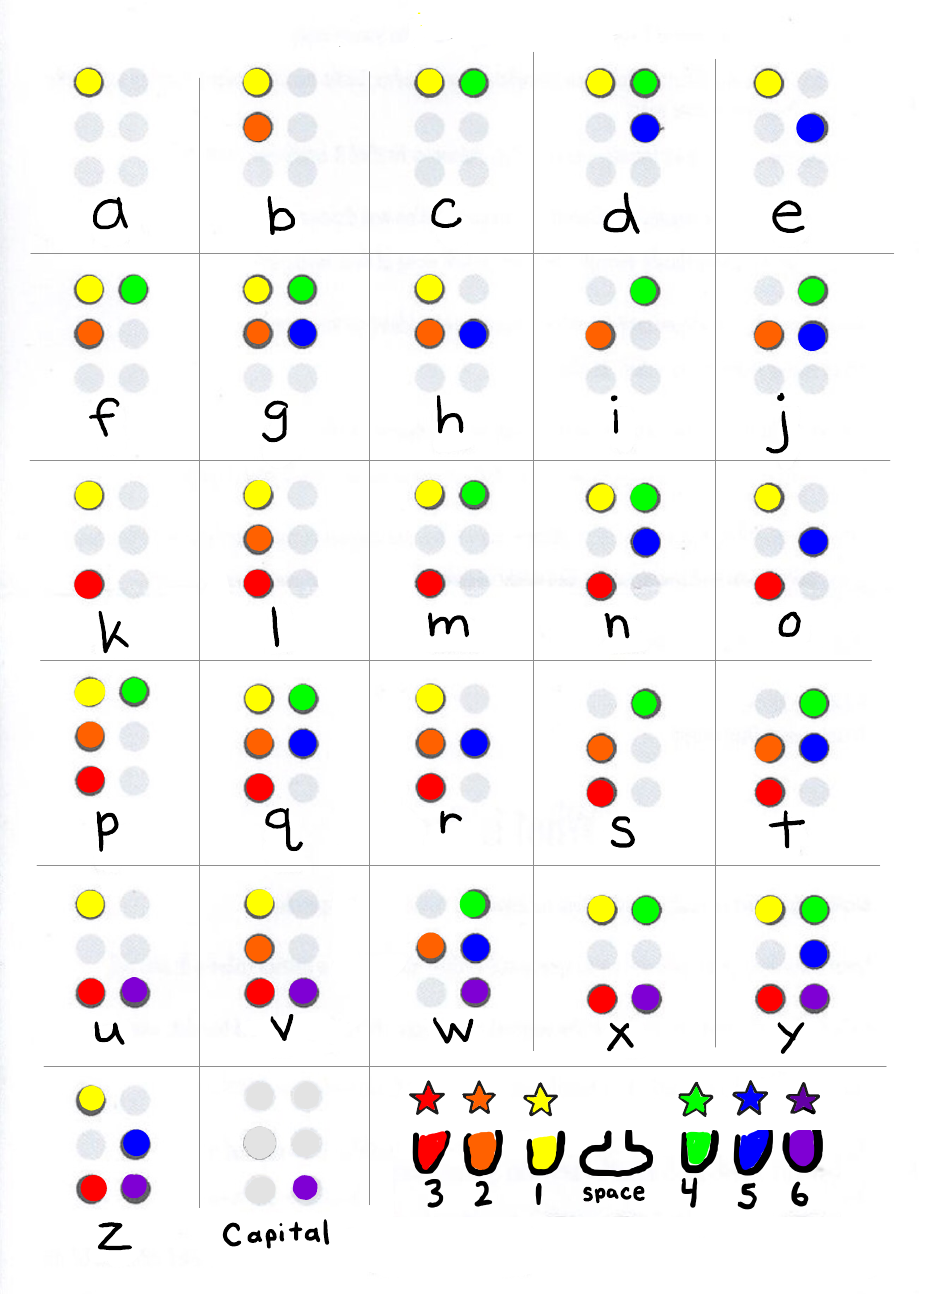 Braille Alphabet Chart in high resolution